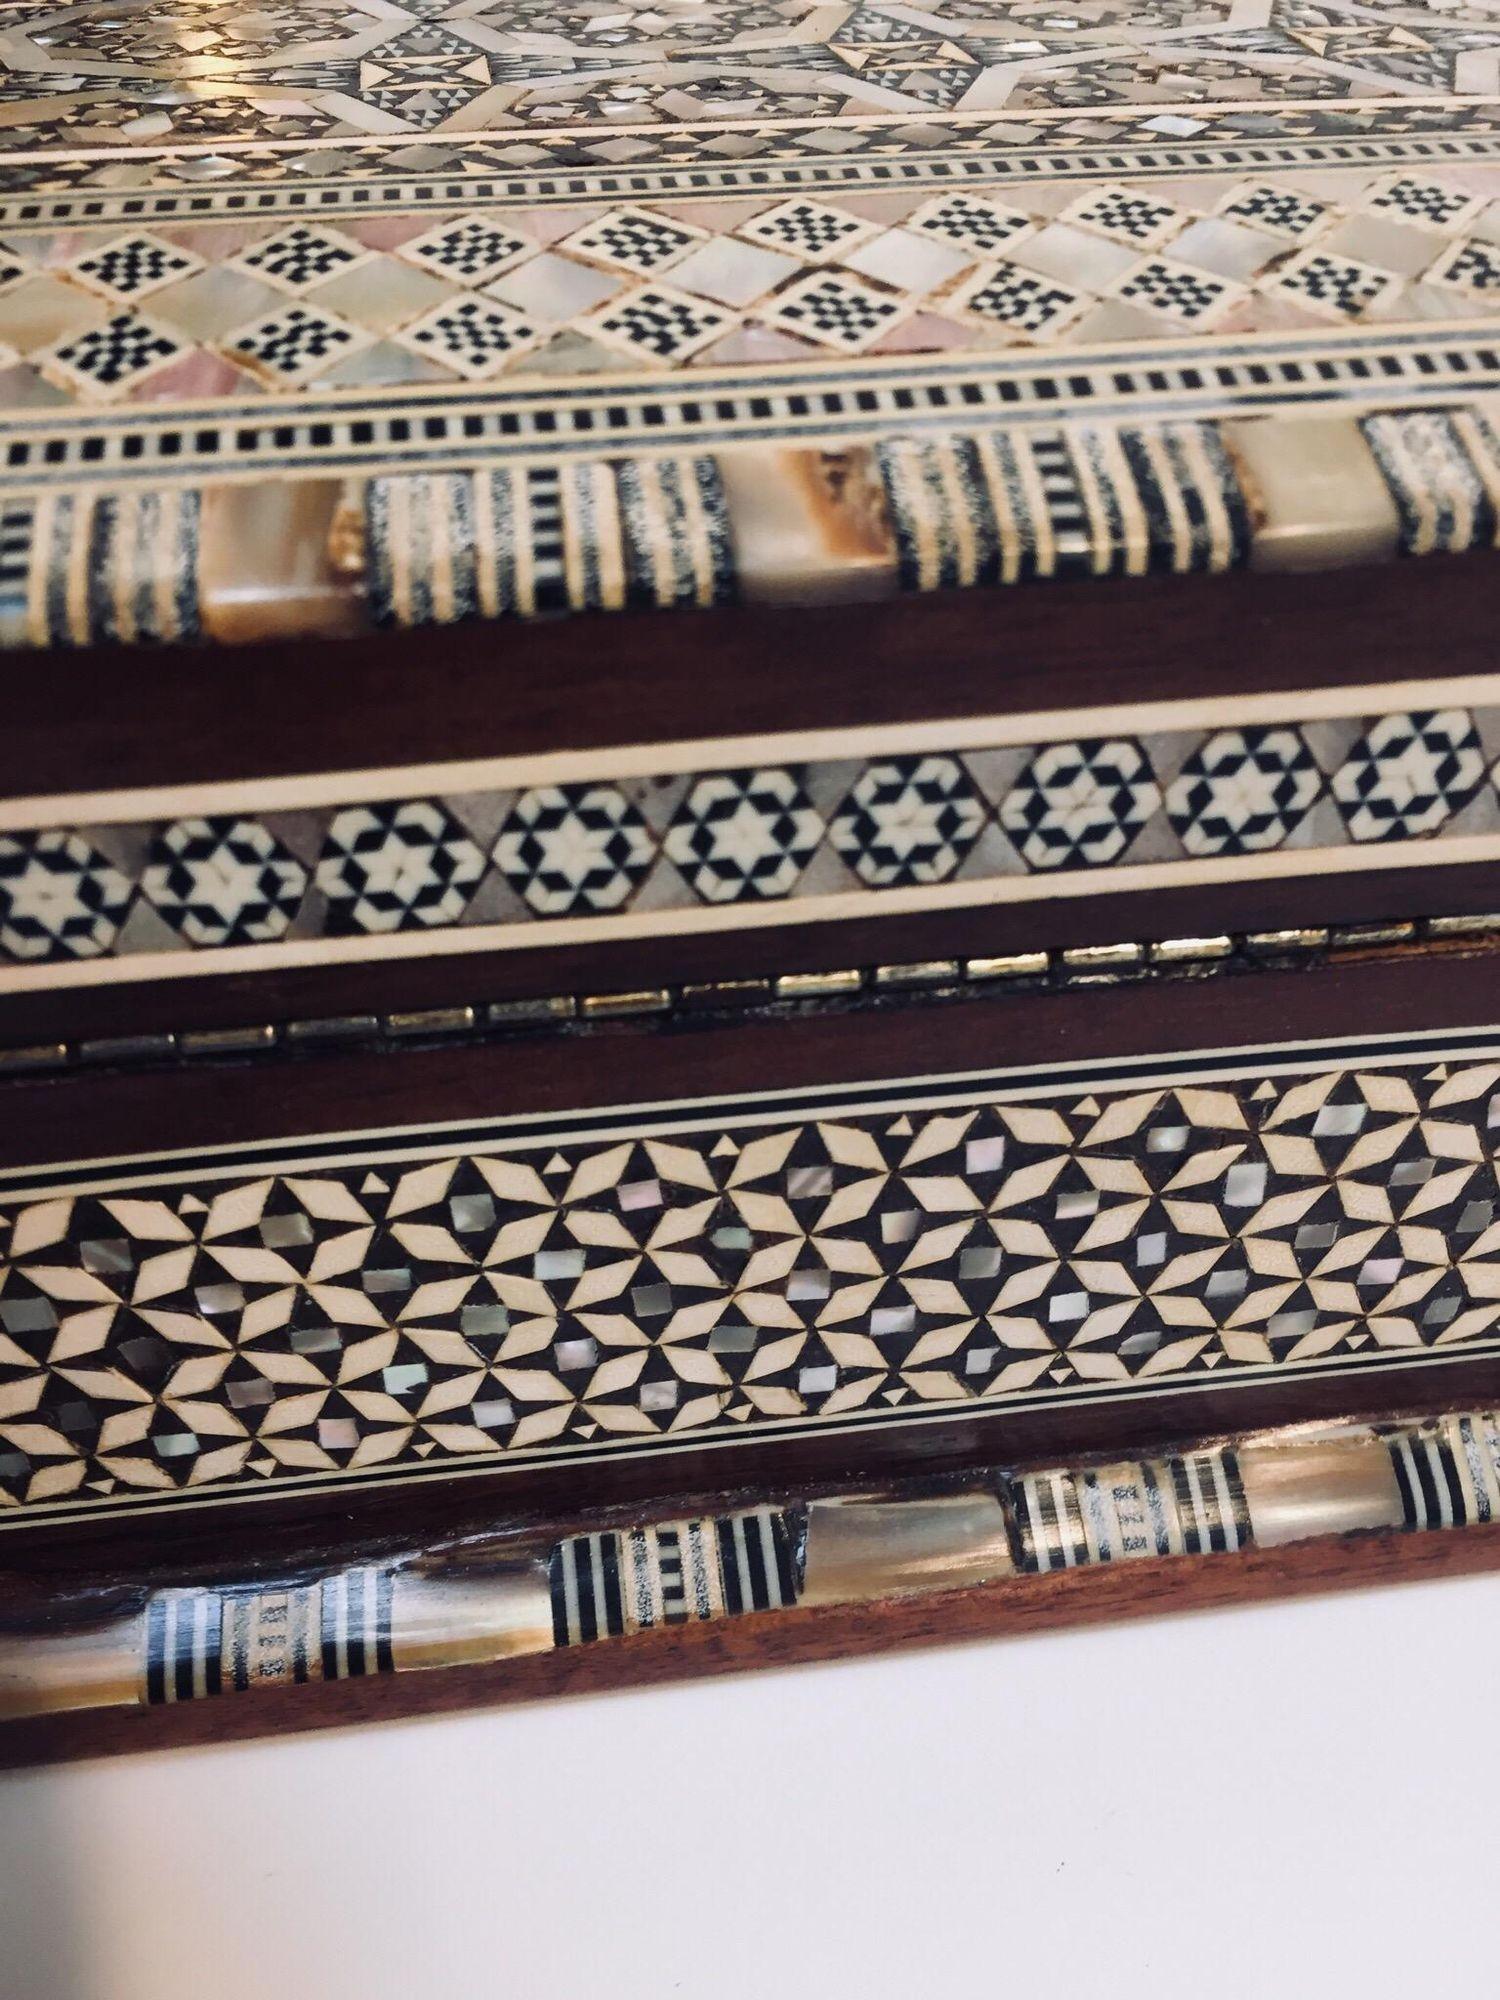 Schmuckkästchen aus maurischem Holz mit Intarsien aus dem Mittleren Osten.
Middle Eastern Box handgefertigt in sehr feinen maurischen Mikro-Mosaik-Diamanten, und eine kontinuierliche sechseckigen und floralen geometrischen maurischen Motiv Design